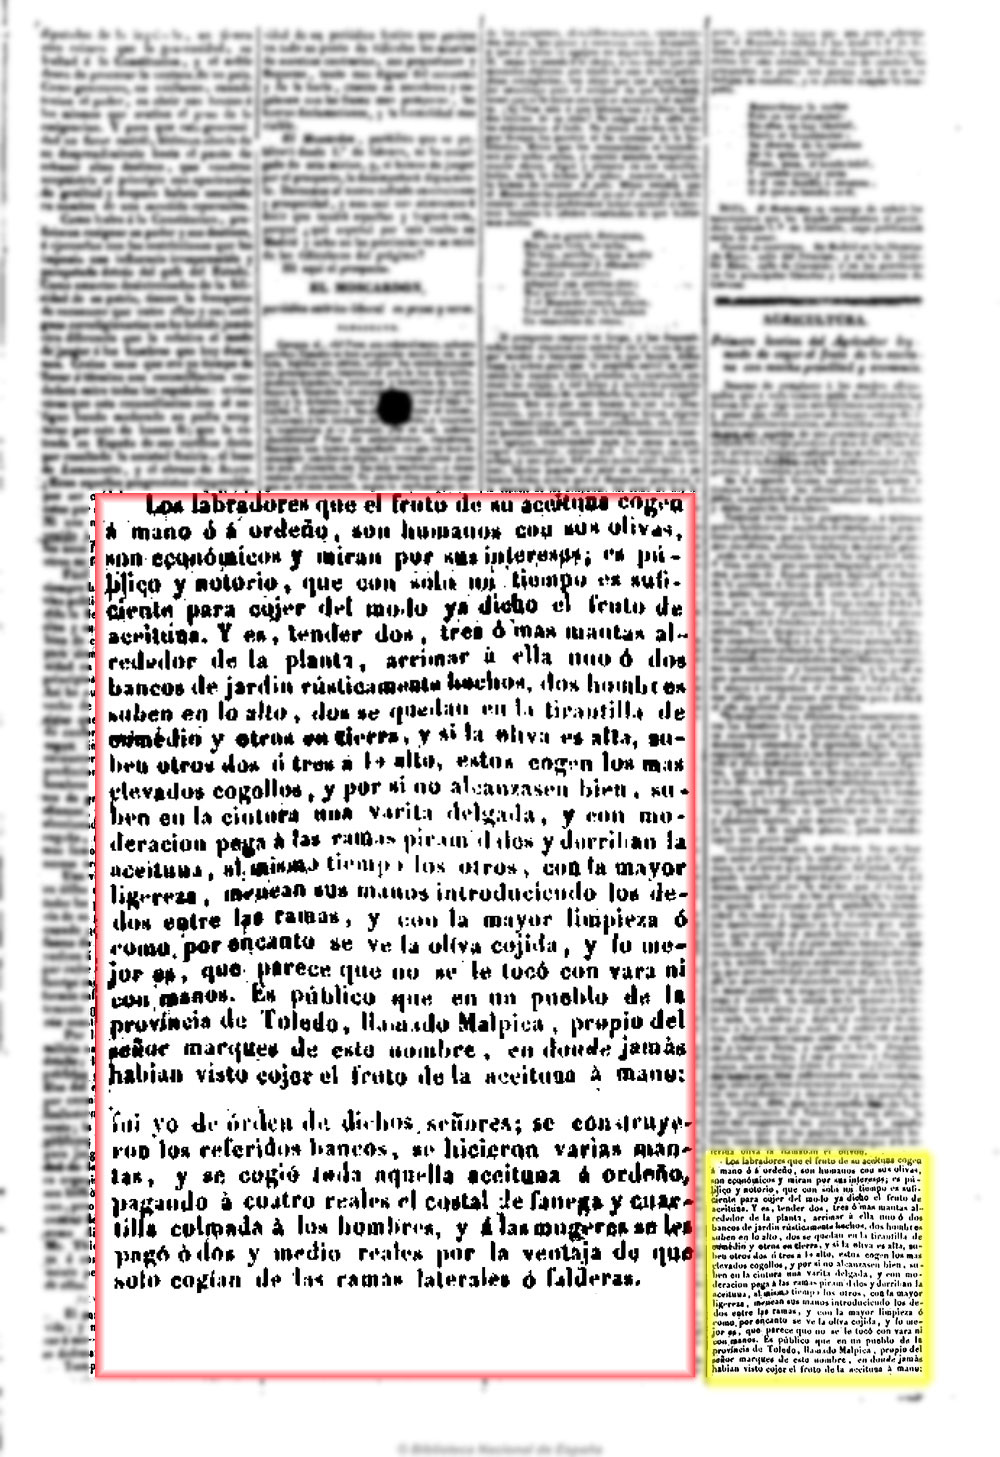 El Eco del comercio 29/1/1844. Recolección de la aceituna a mano